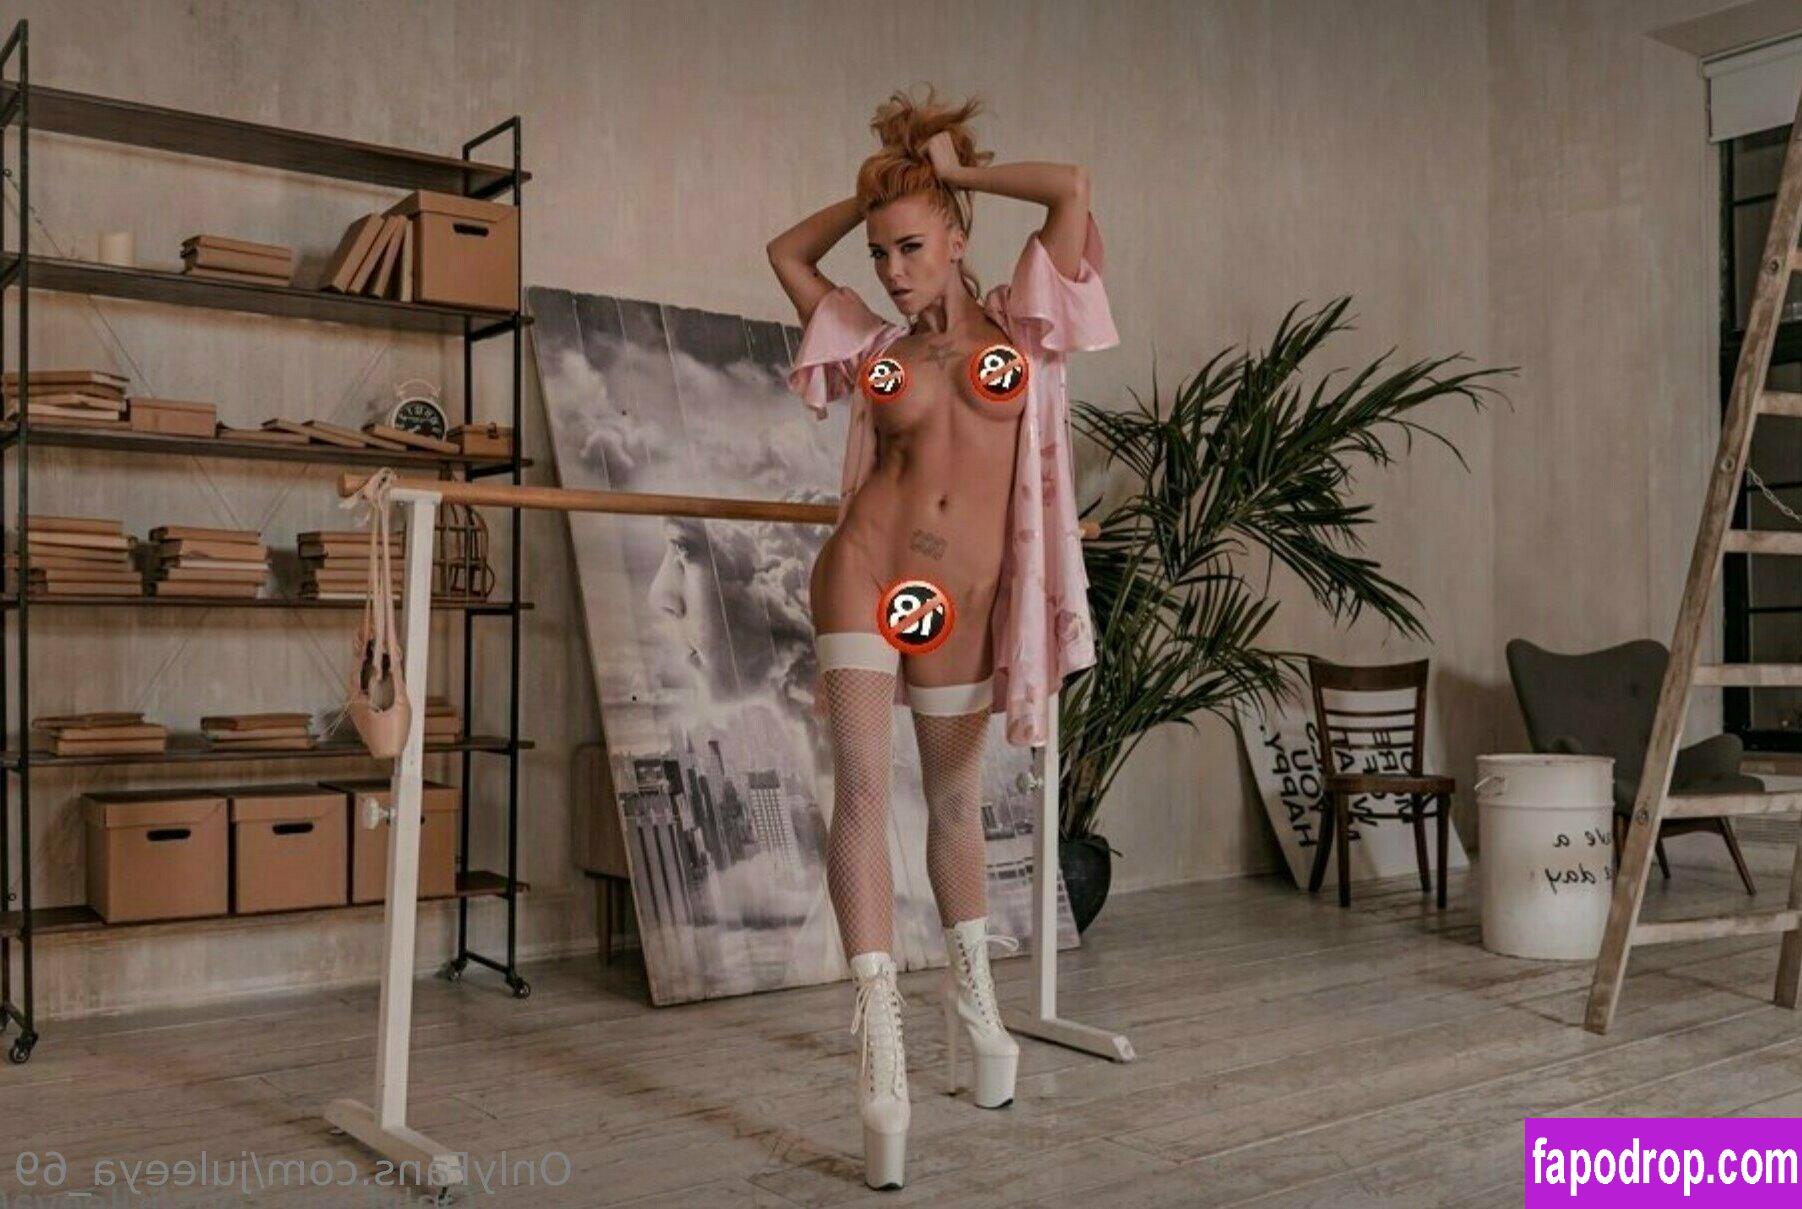 juleeya_69 /  leak of nude photo #0075 from OnlyFans or Patreon